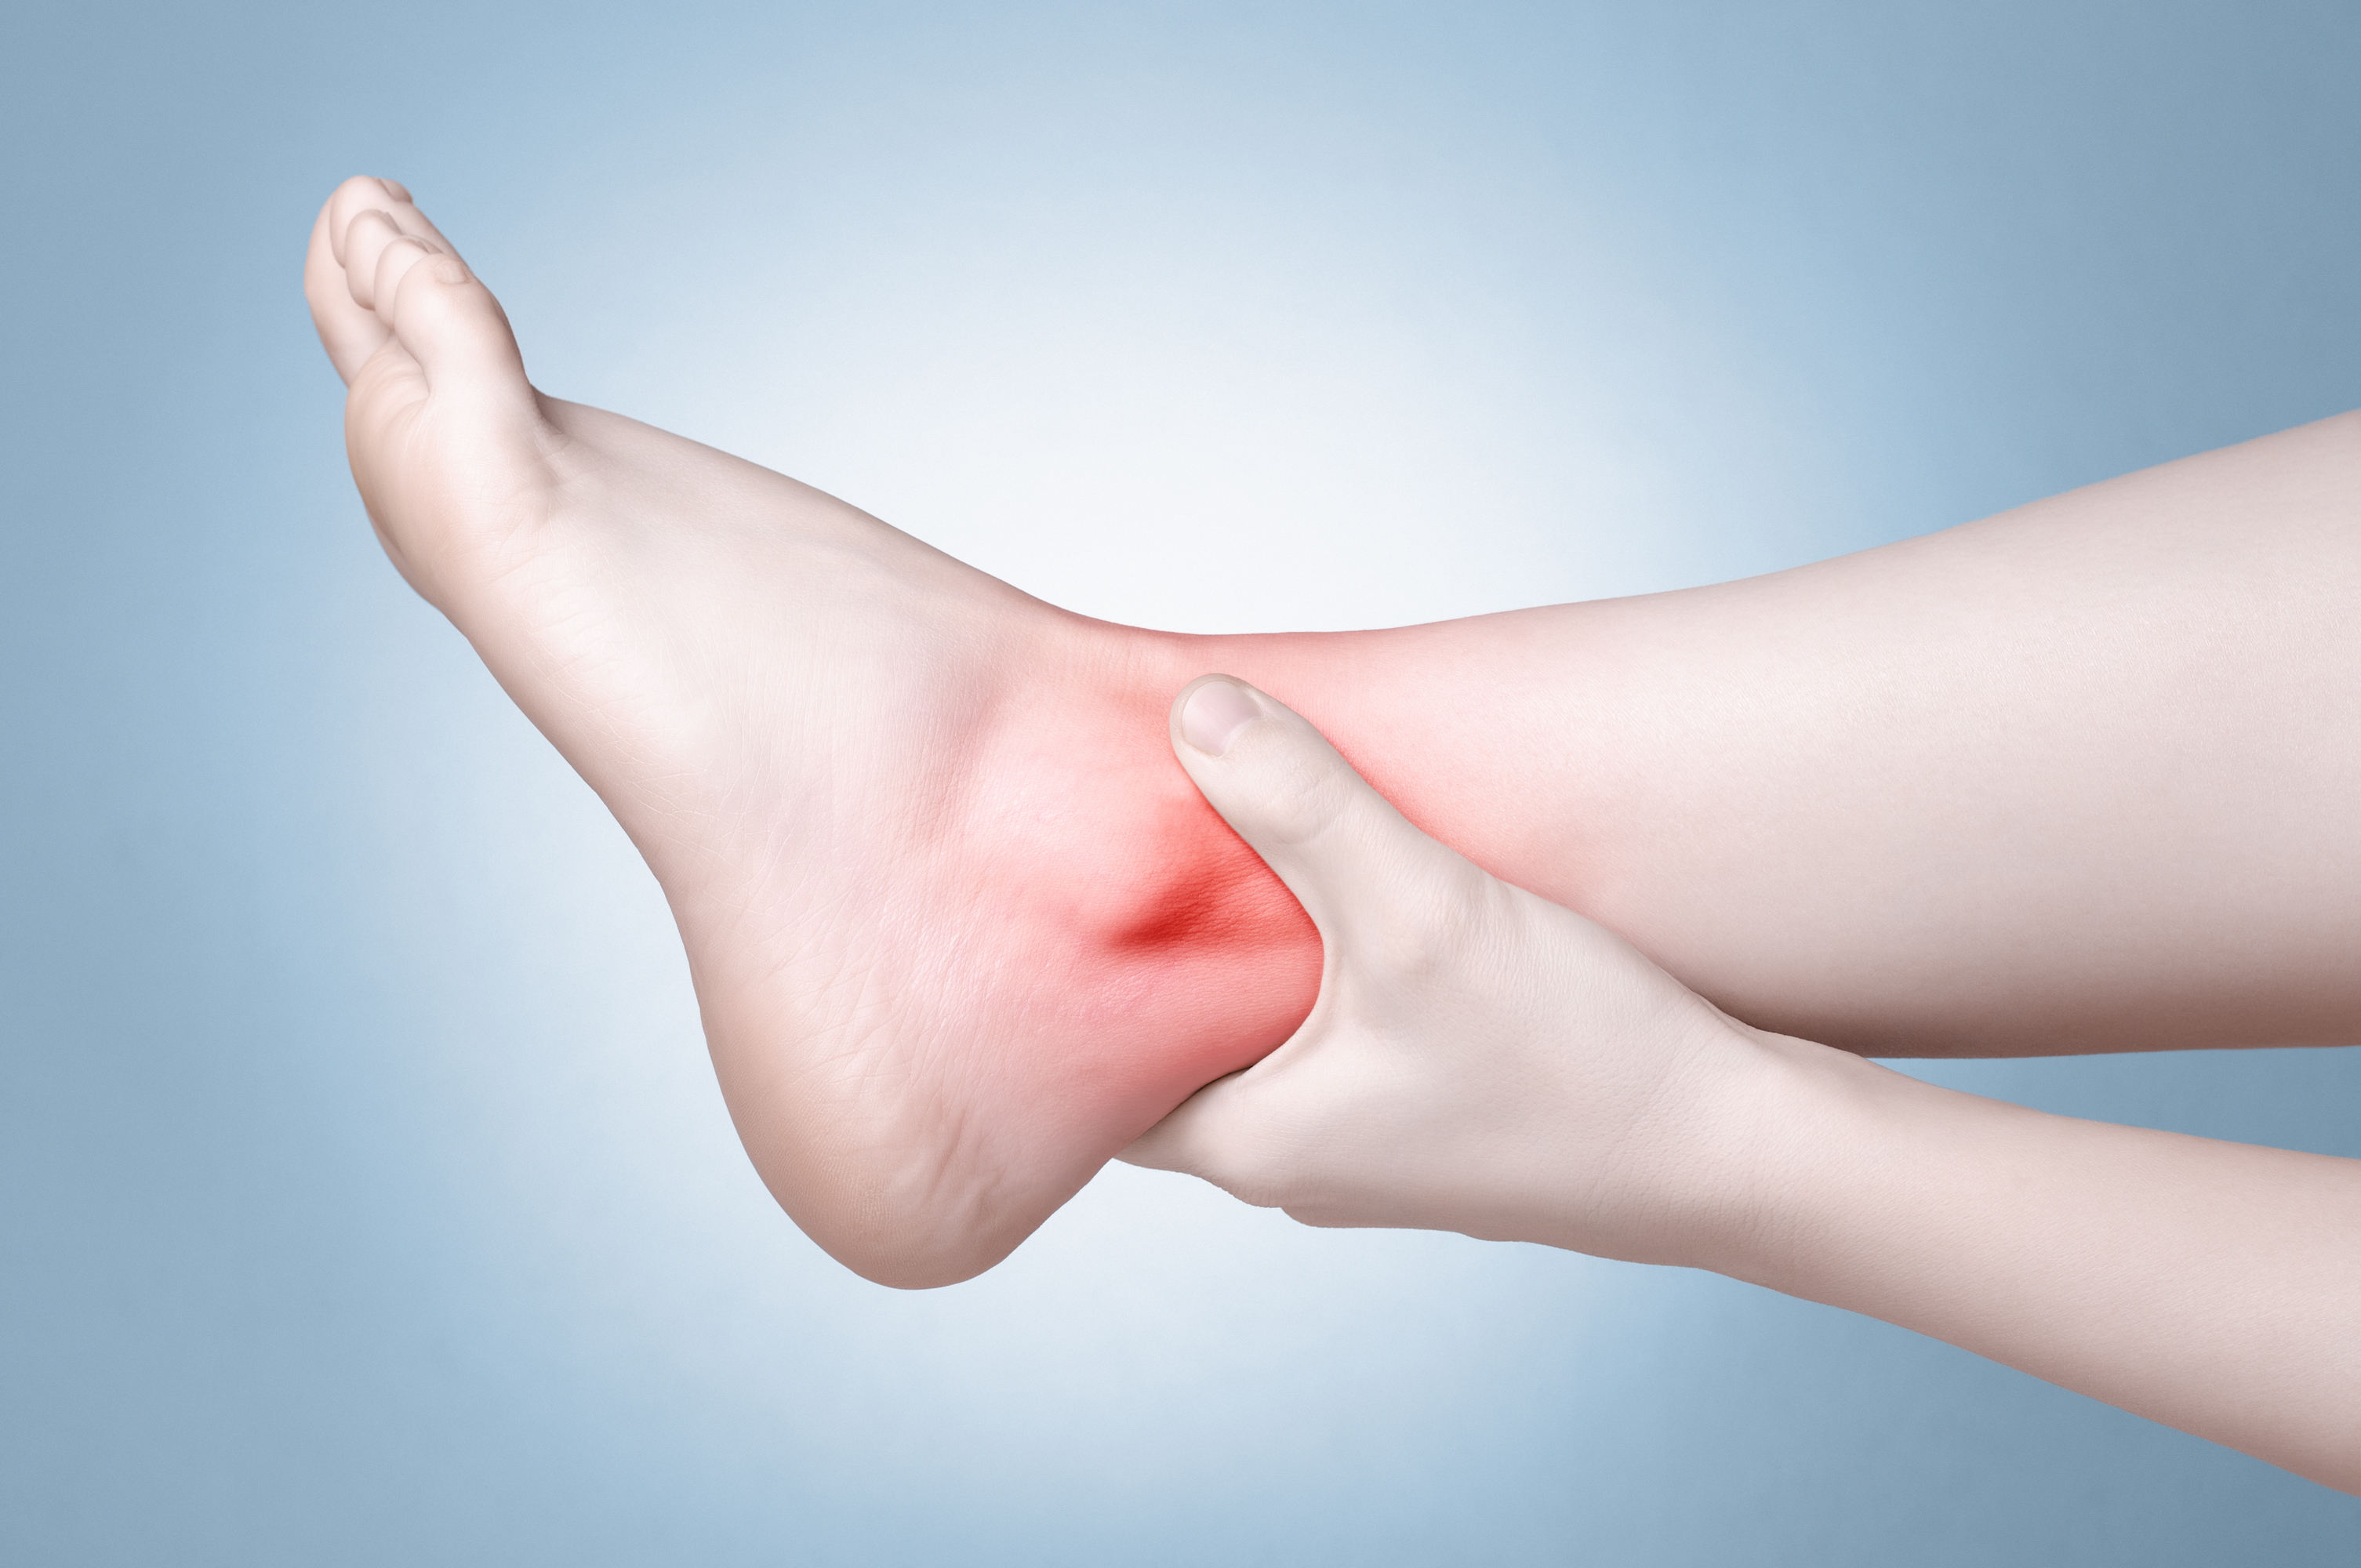 Onet Medical - Las lesiones del tobillo y esguinces pueden